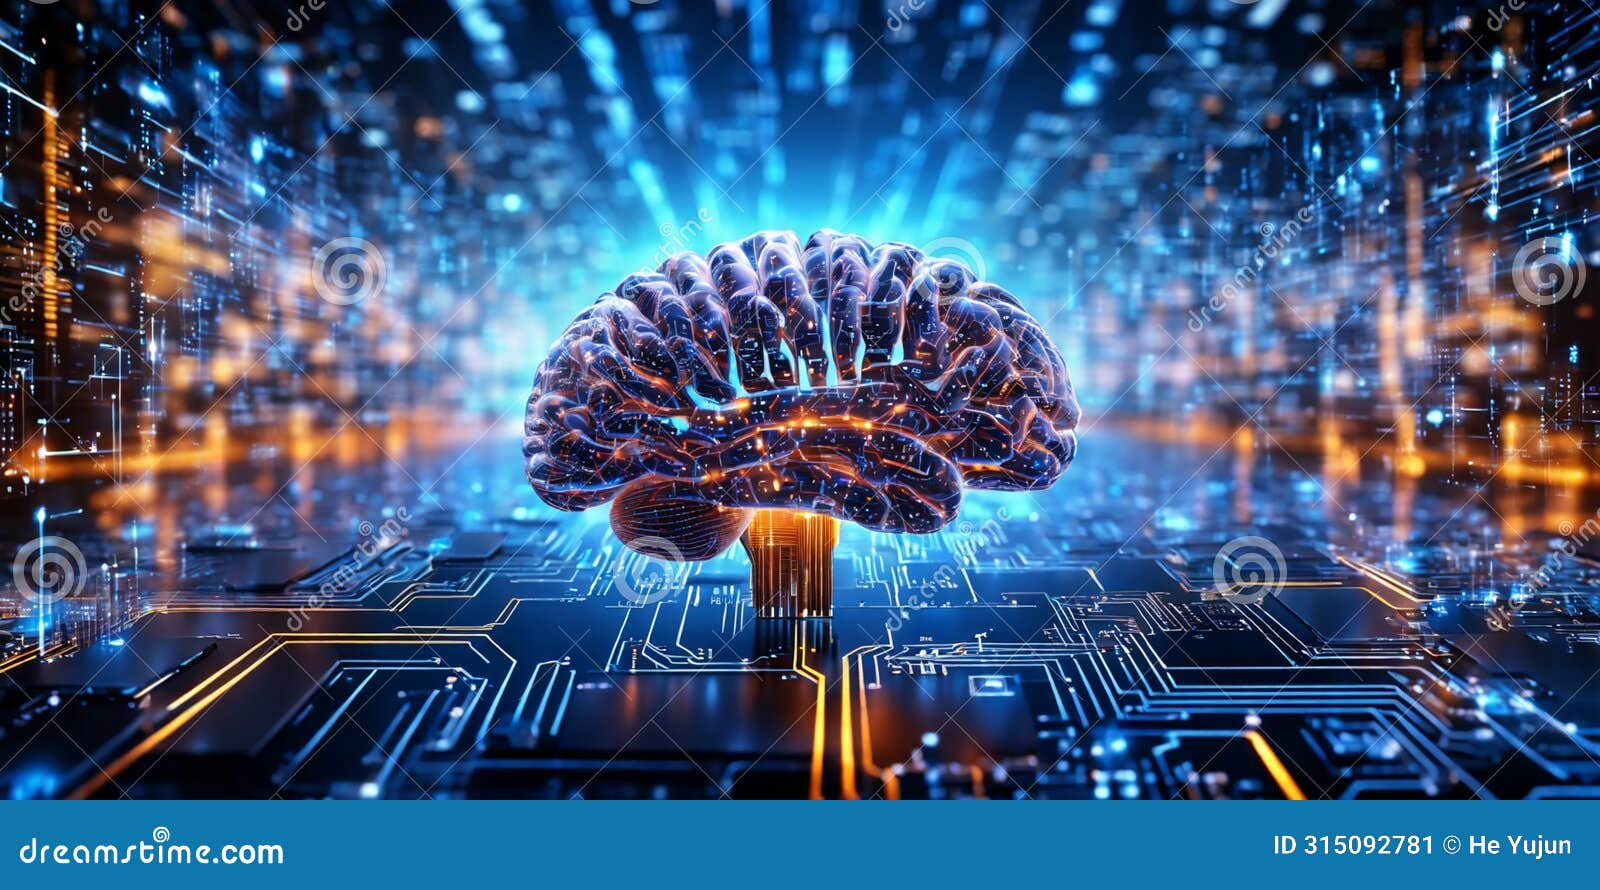 artificial intelligence neurological data brain